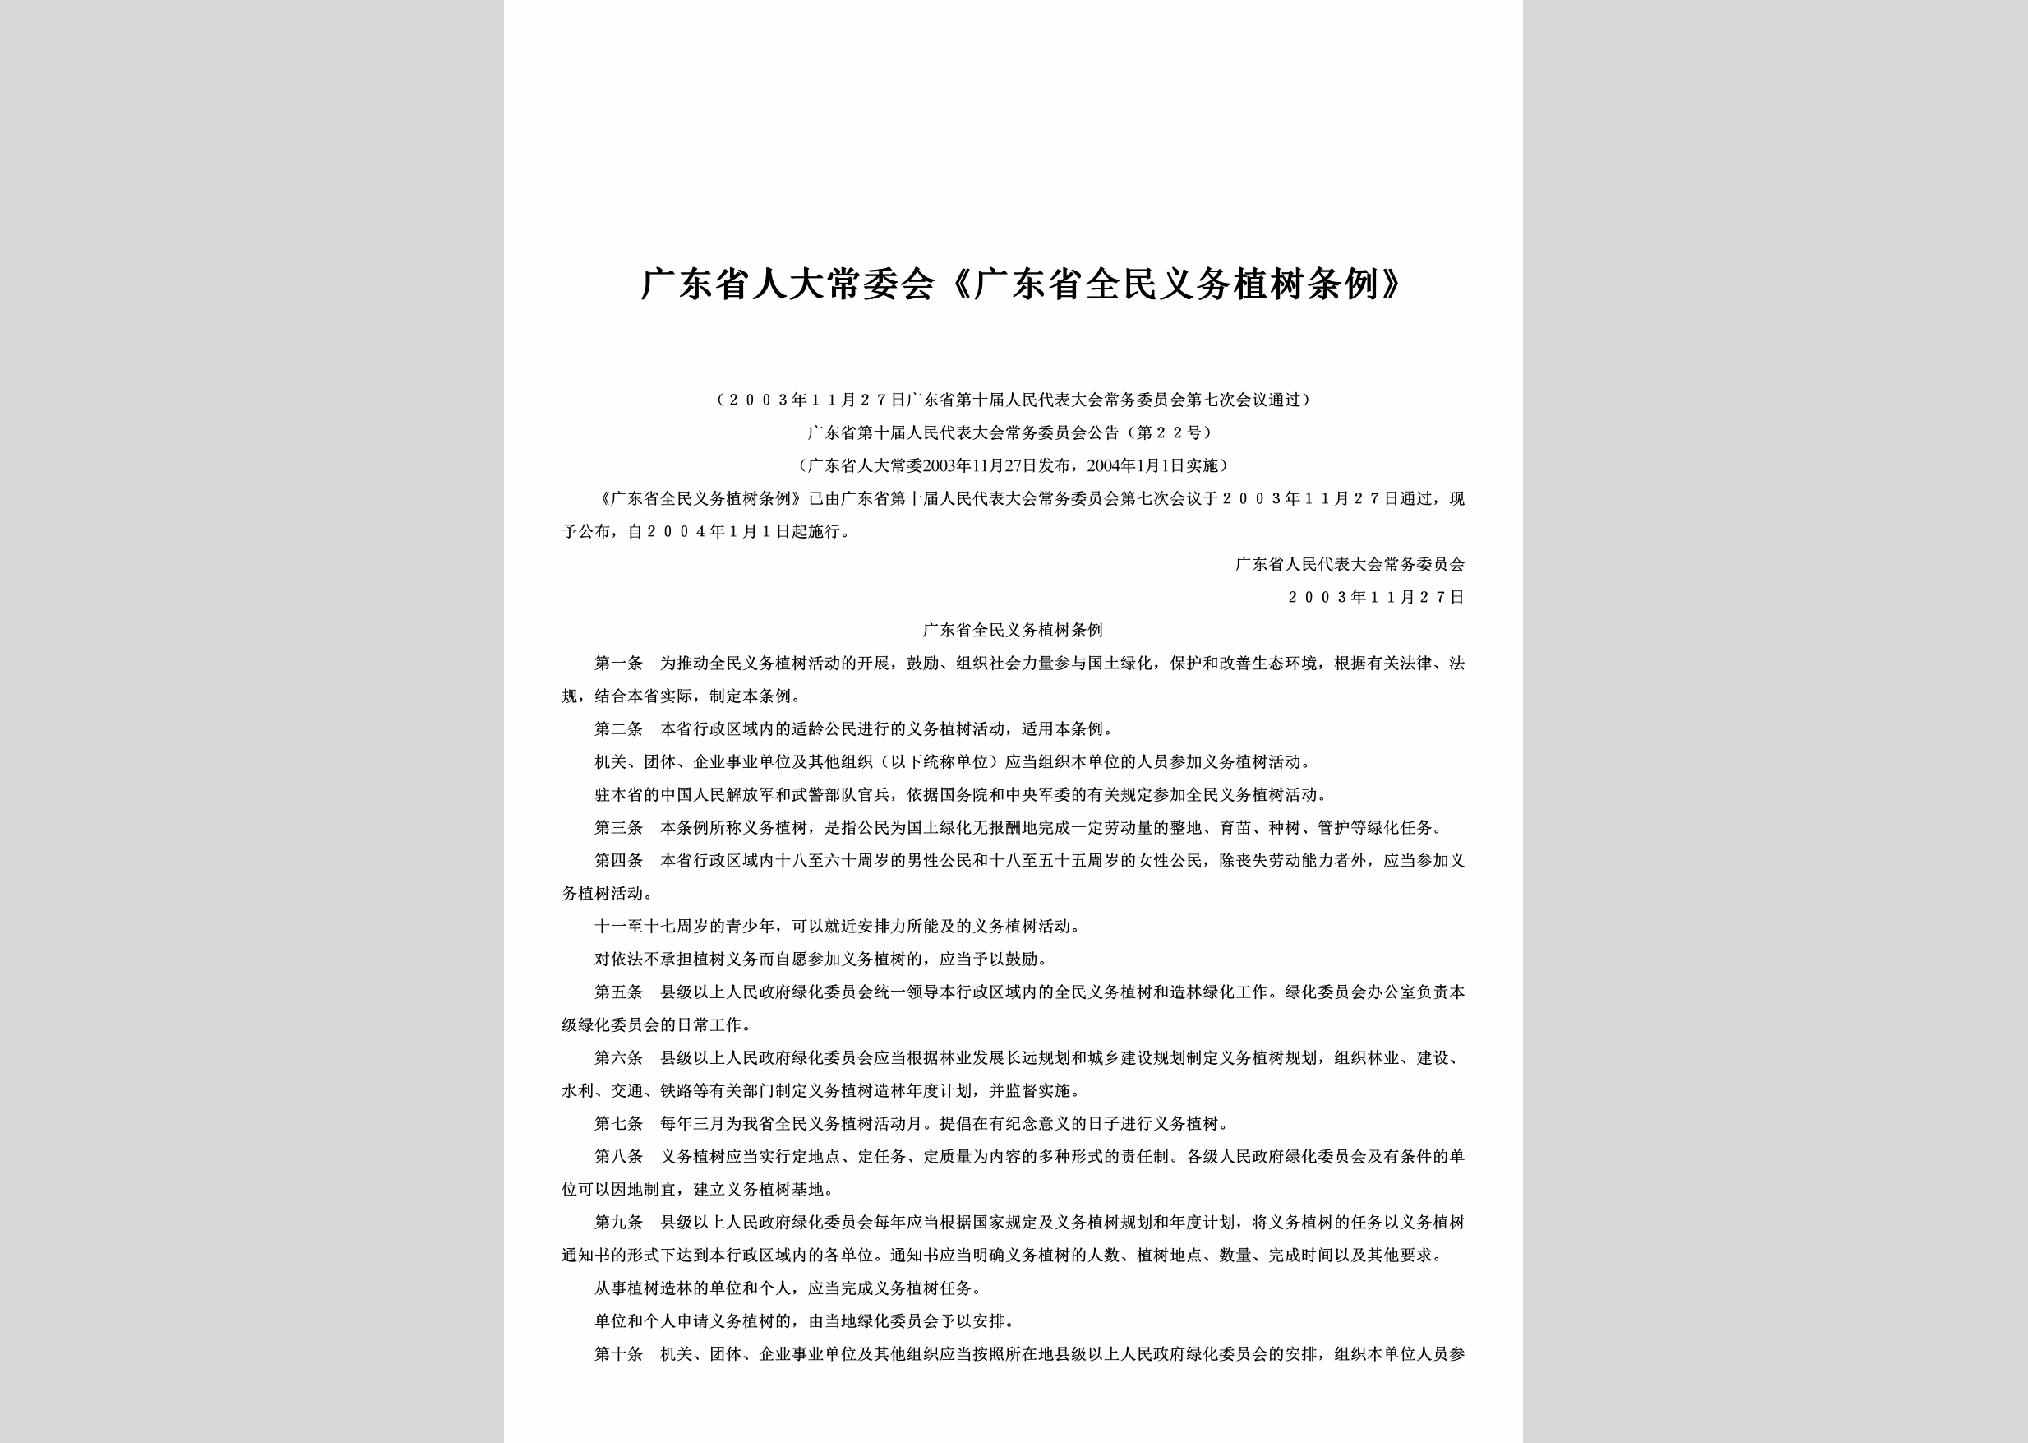 广东省第十届人民代表大会常务委员会公告第22号：《广东省全民义务植树条例》